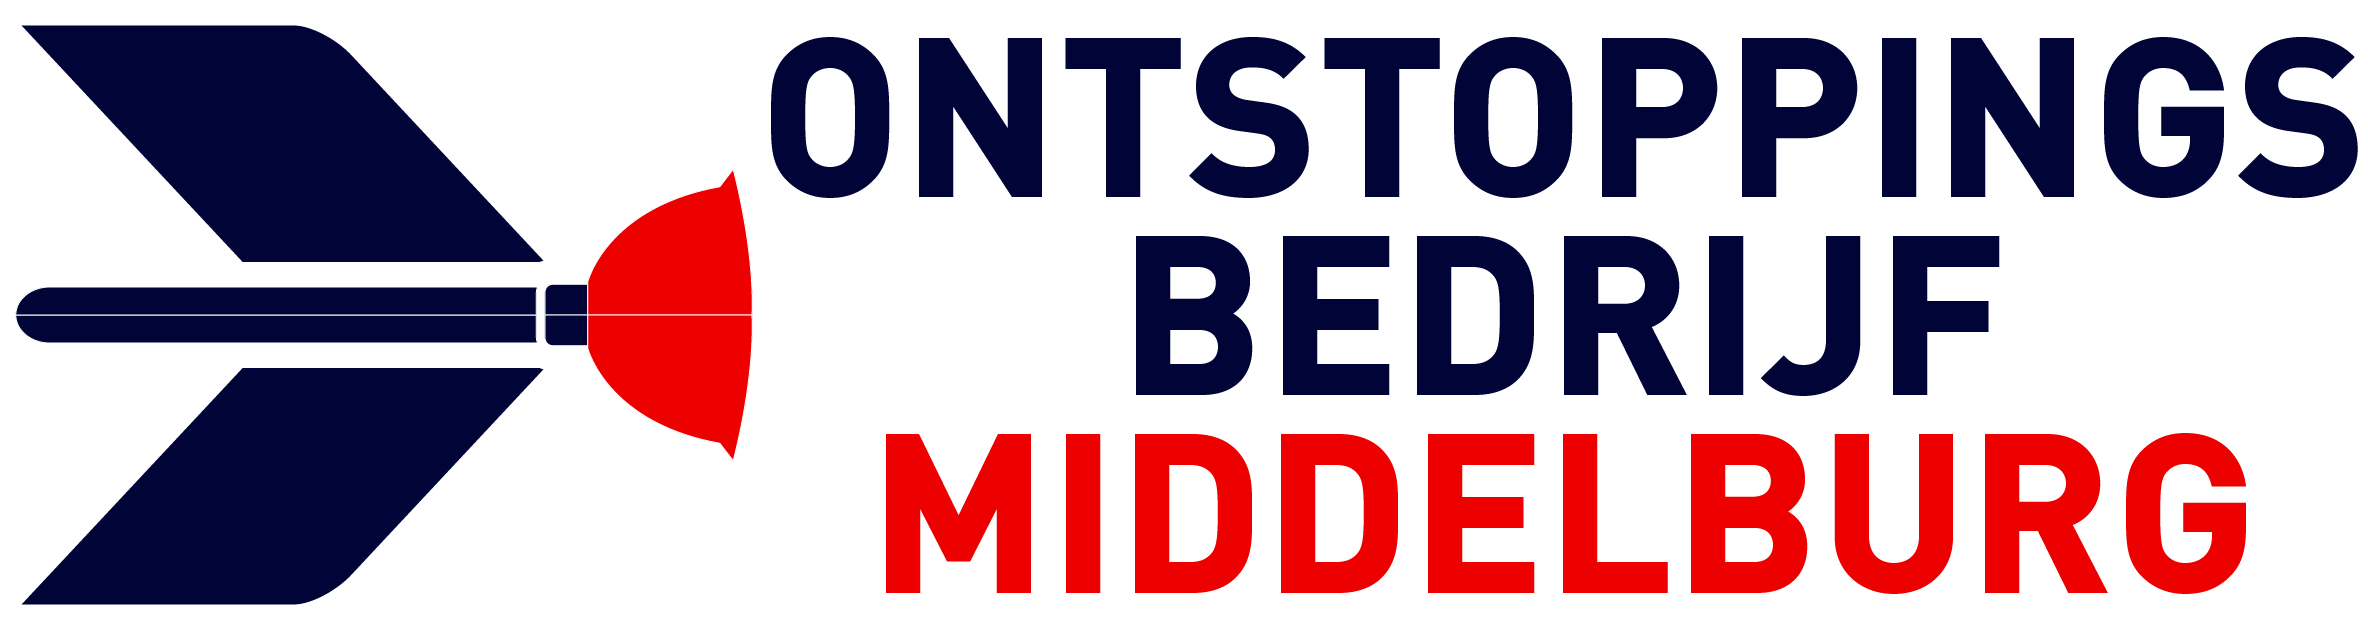 Ontstoppingsbedrijf Middelburg logo